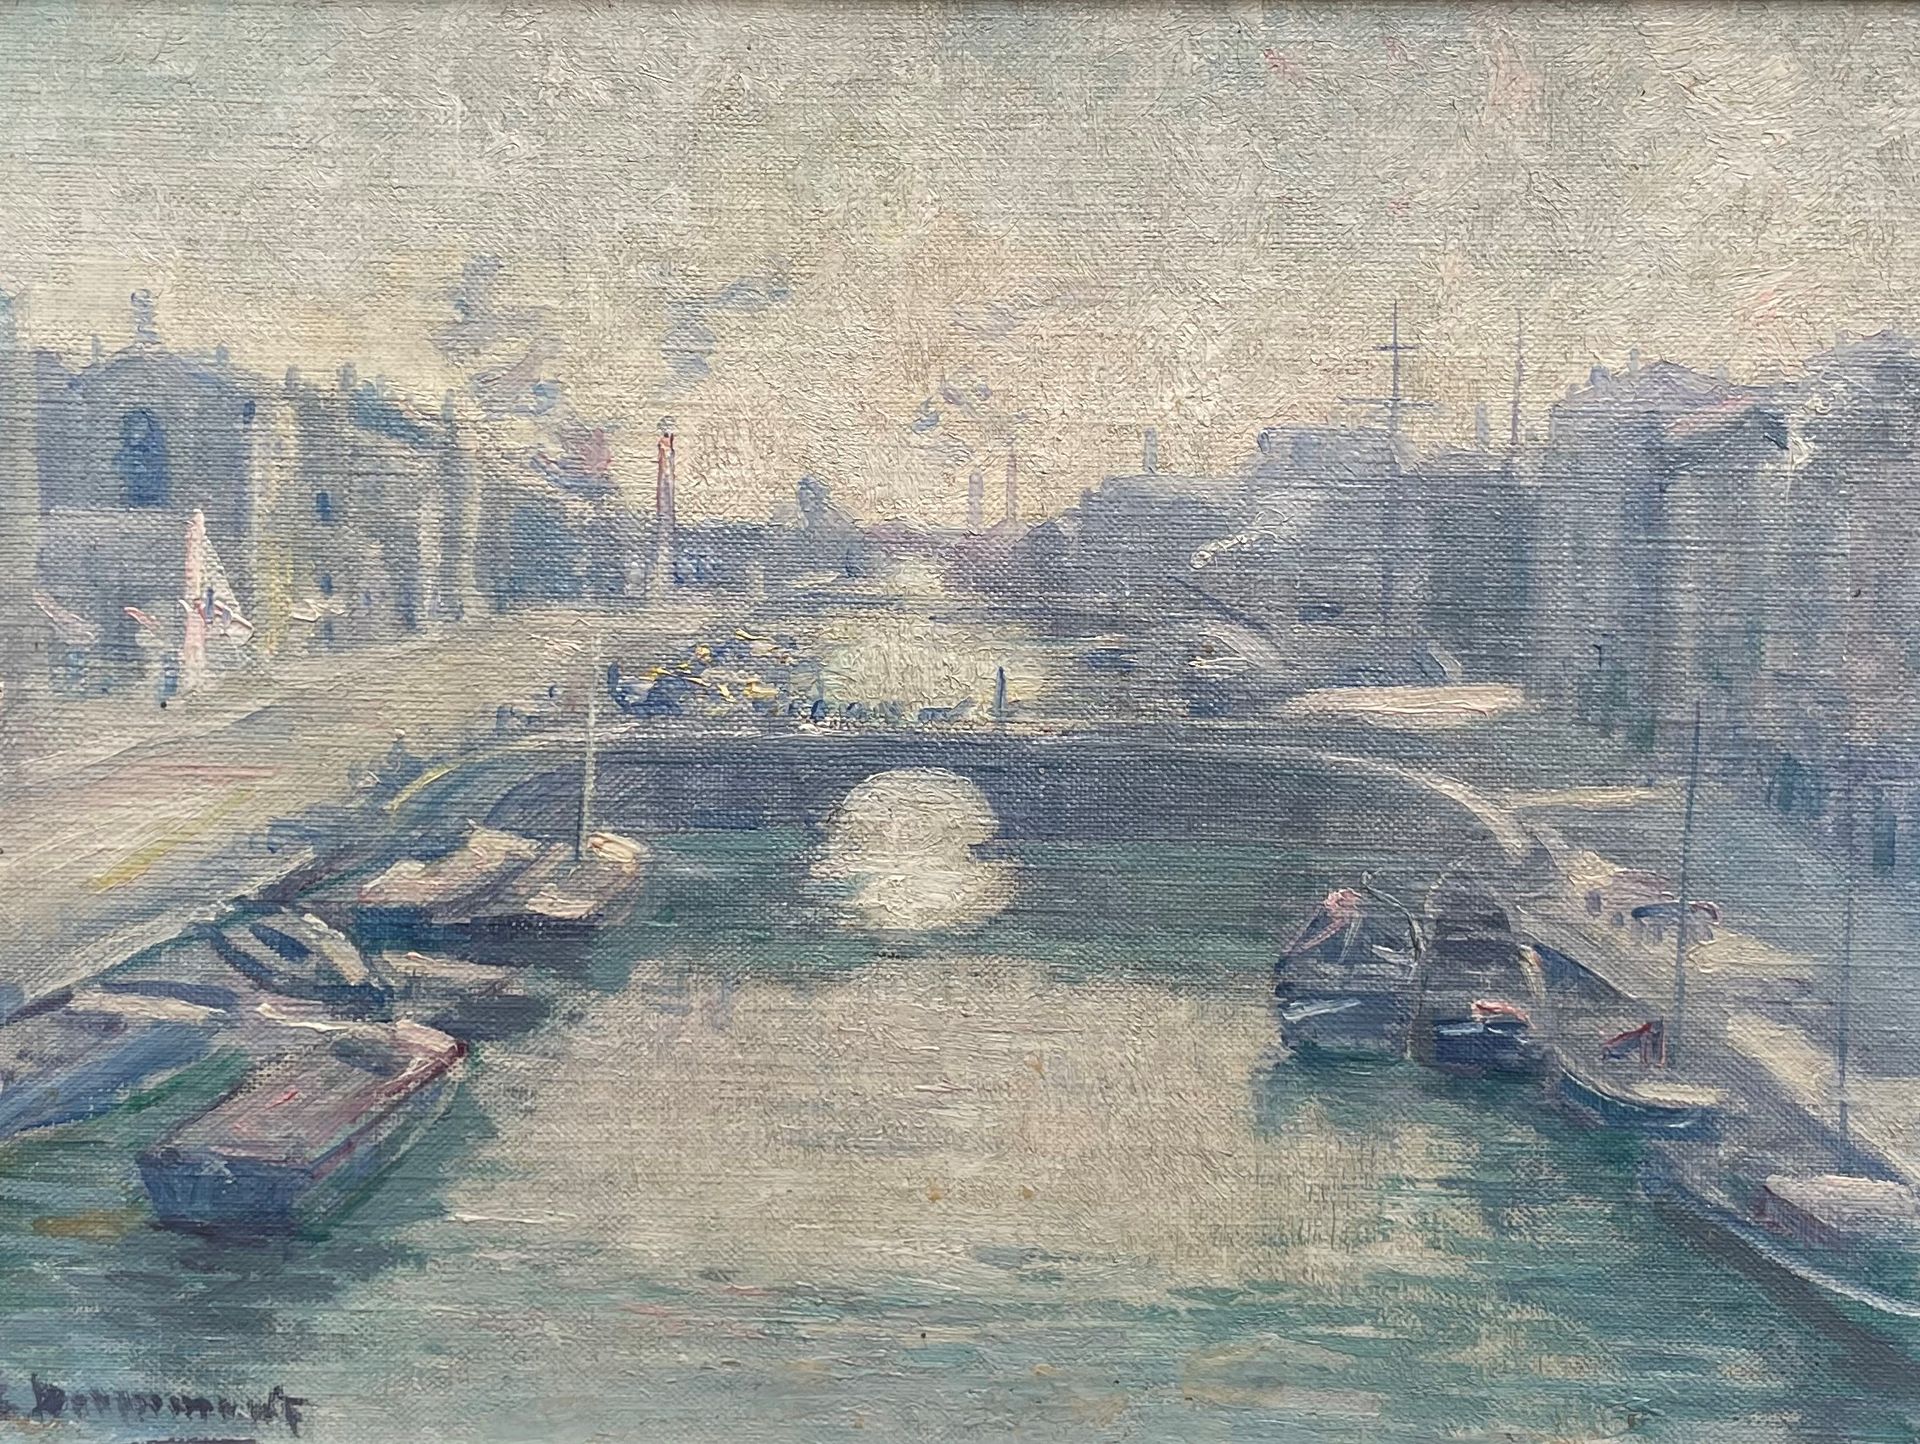 Ernest DESURMONT (1870-1930) Canal de l'Escaut
Oil on isorel
左下角签名
24x32 cm.